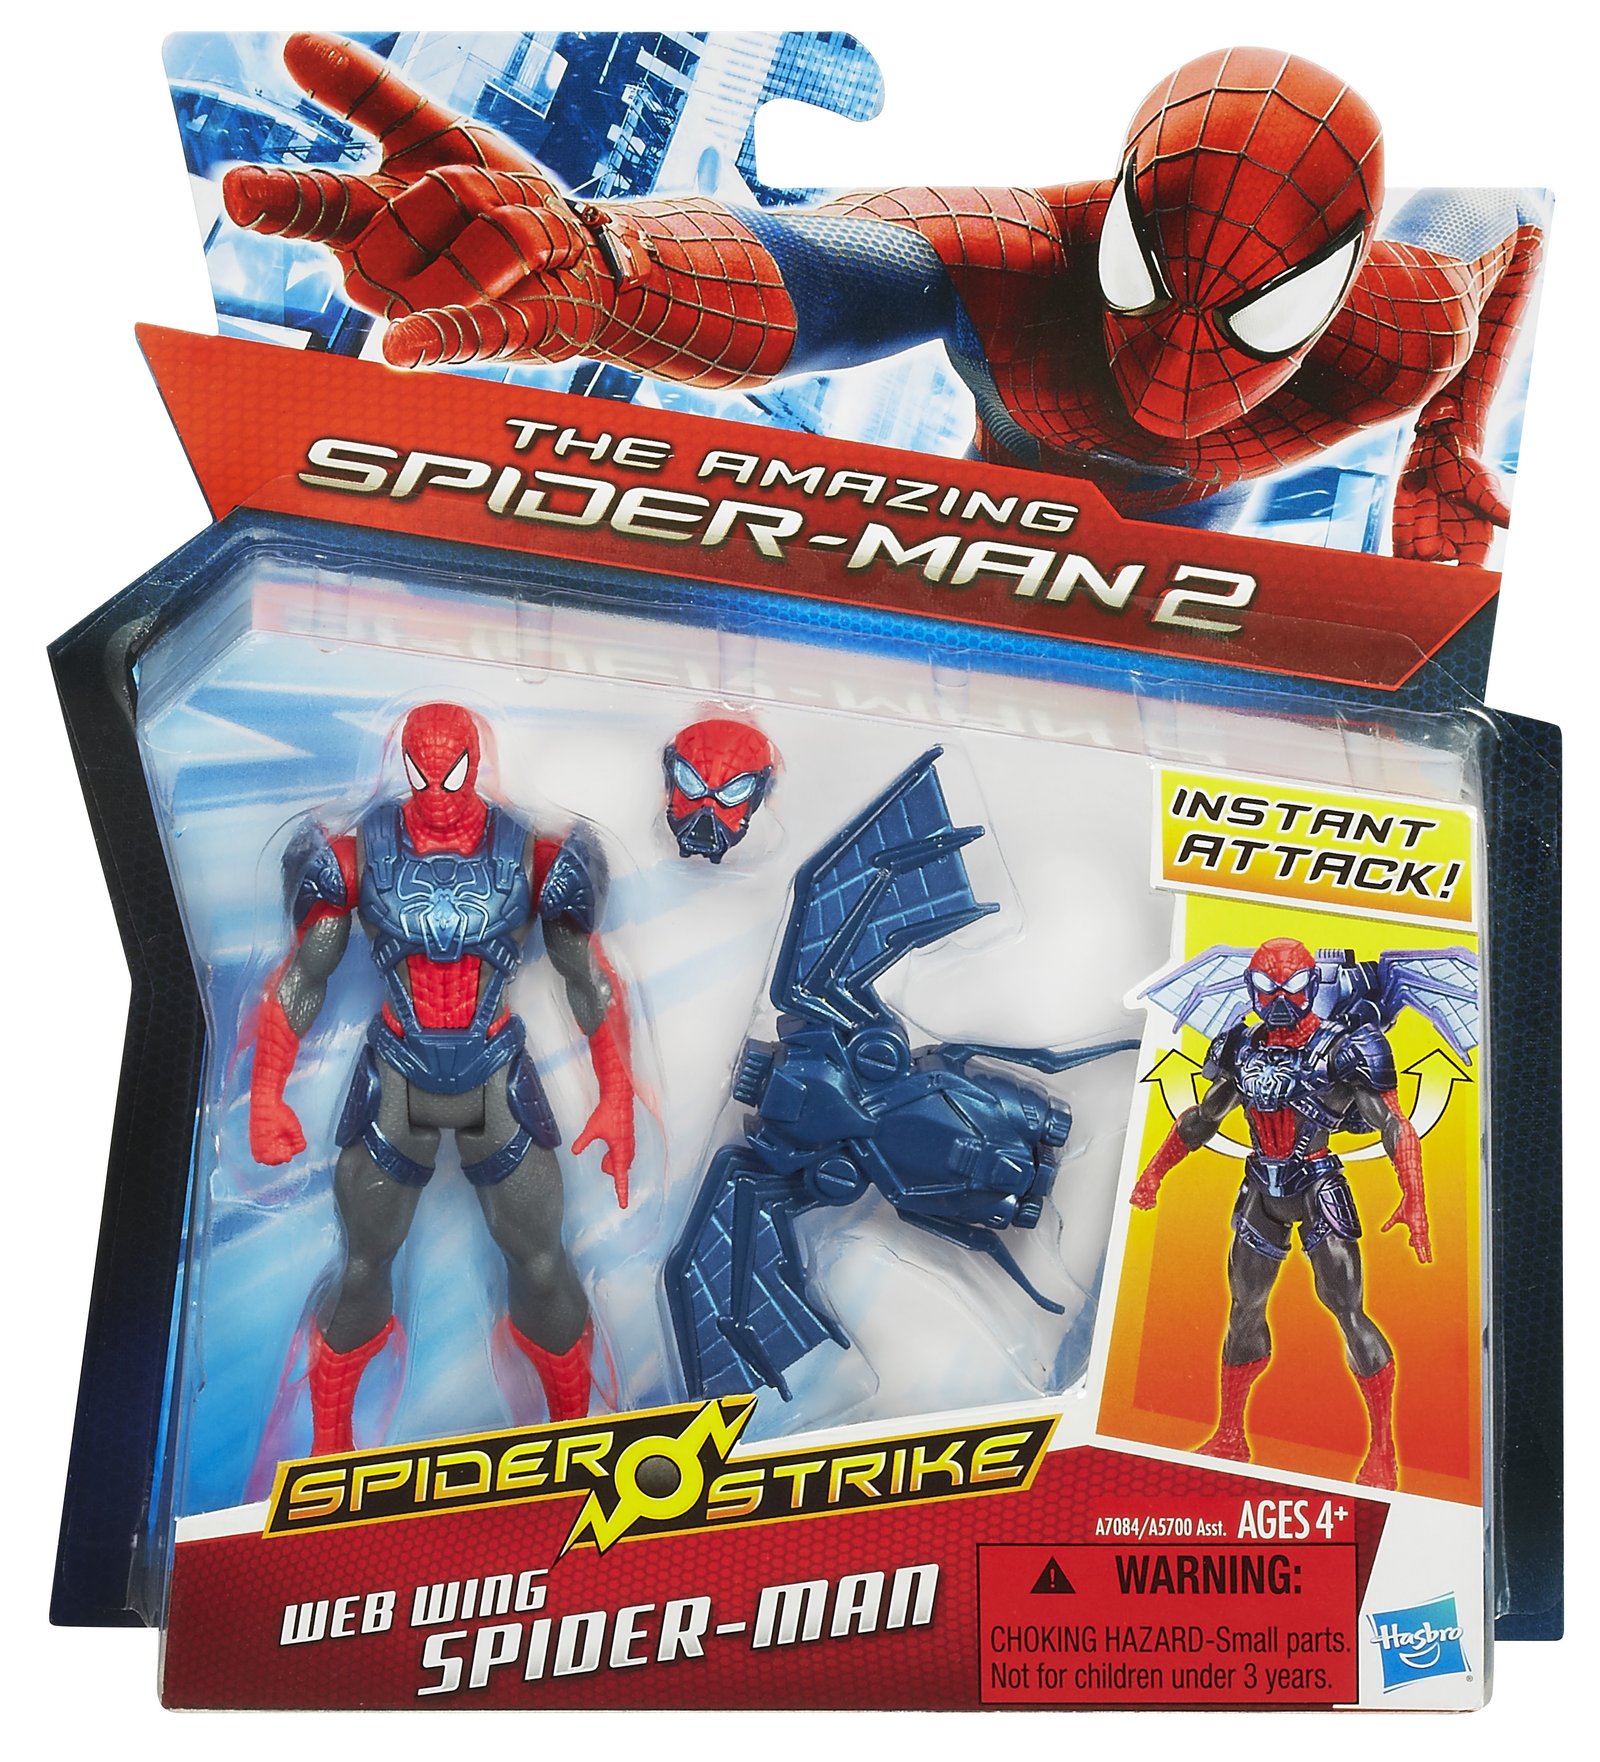 Amazing Spider-Man 2: Spider Strike: Web Wing Spider-Man, package3023 x 3329